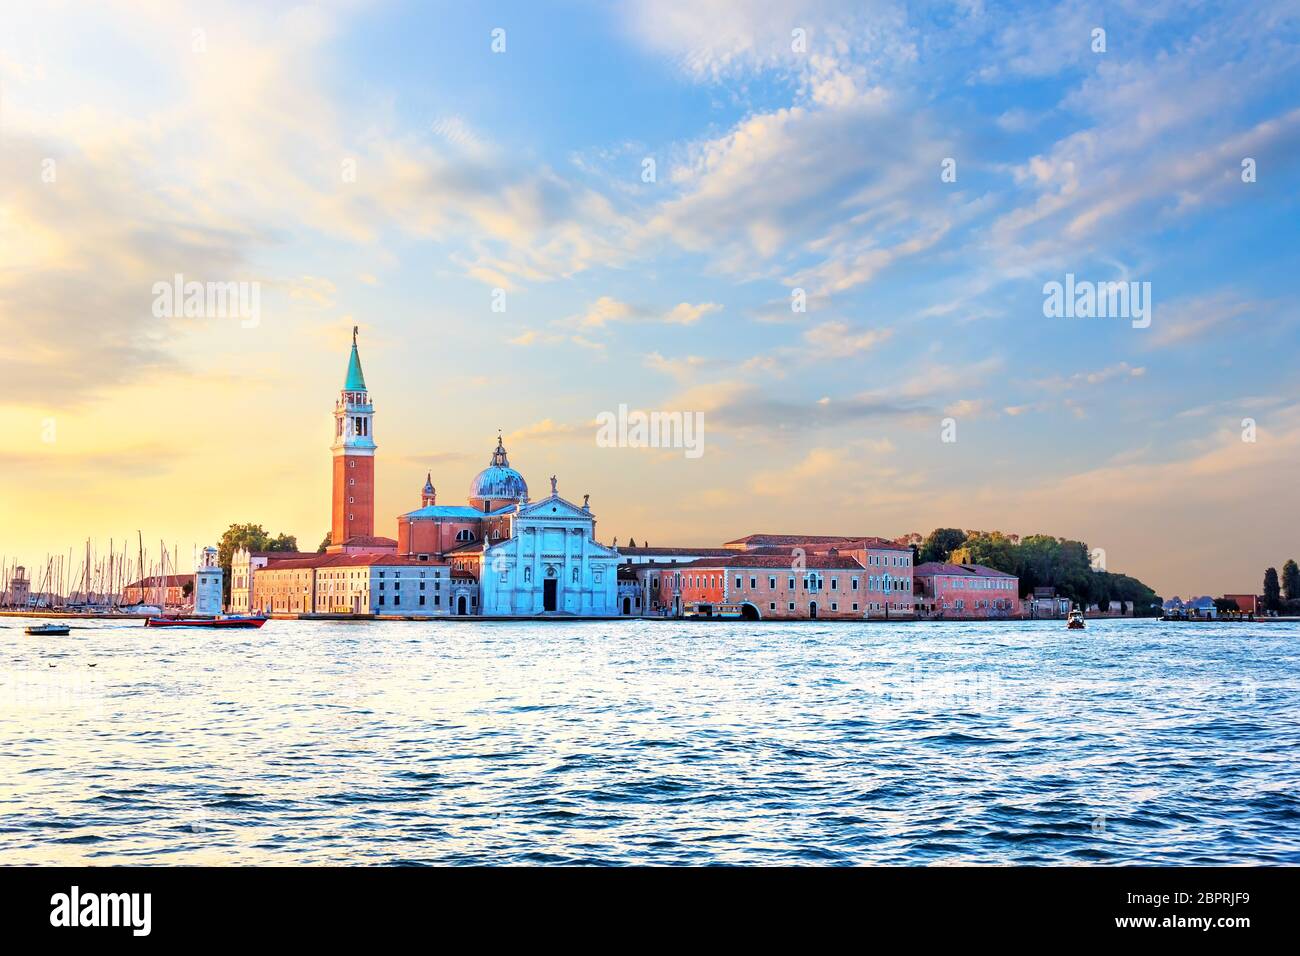 San Giorgio Maggiore Island view in Venice, Italy. Stock Photo